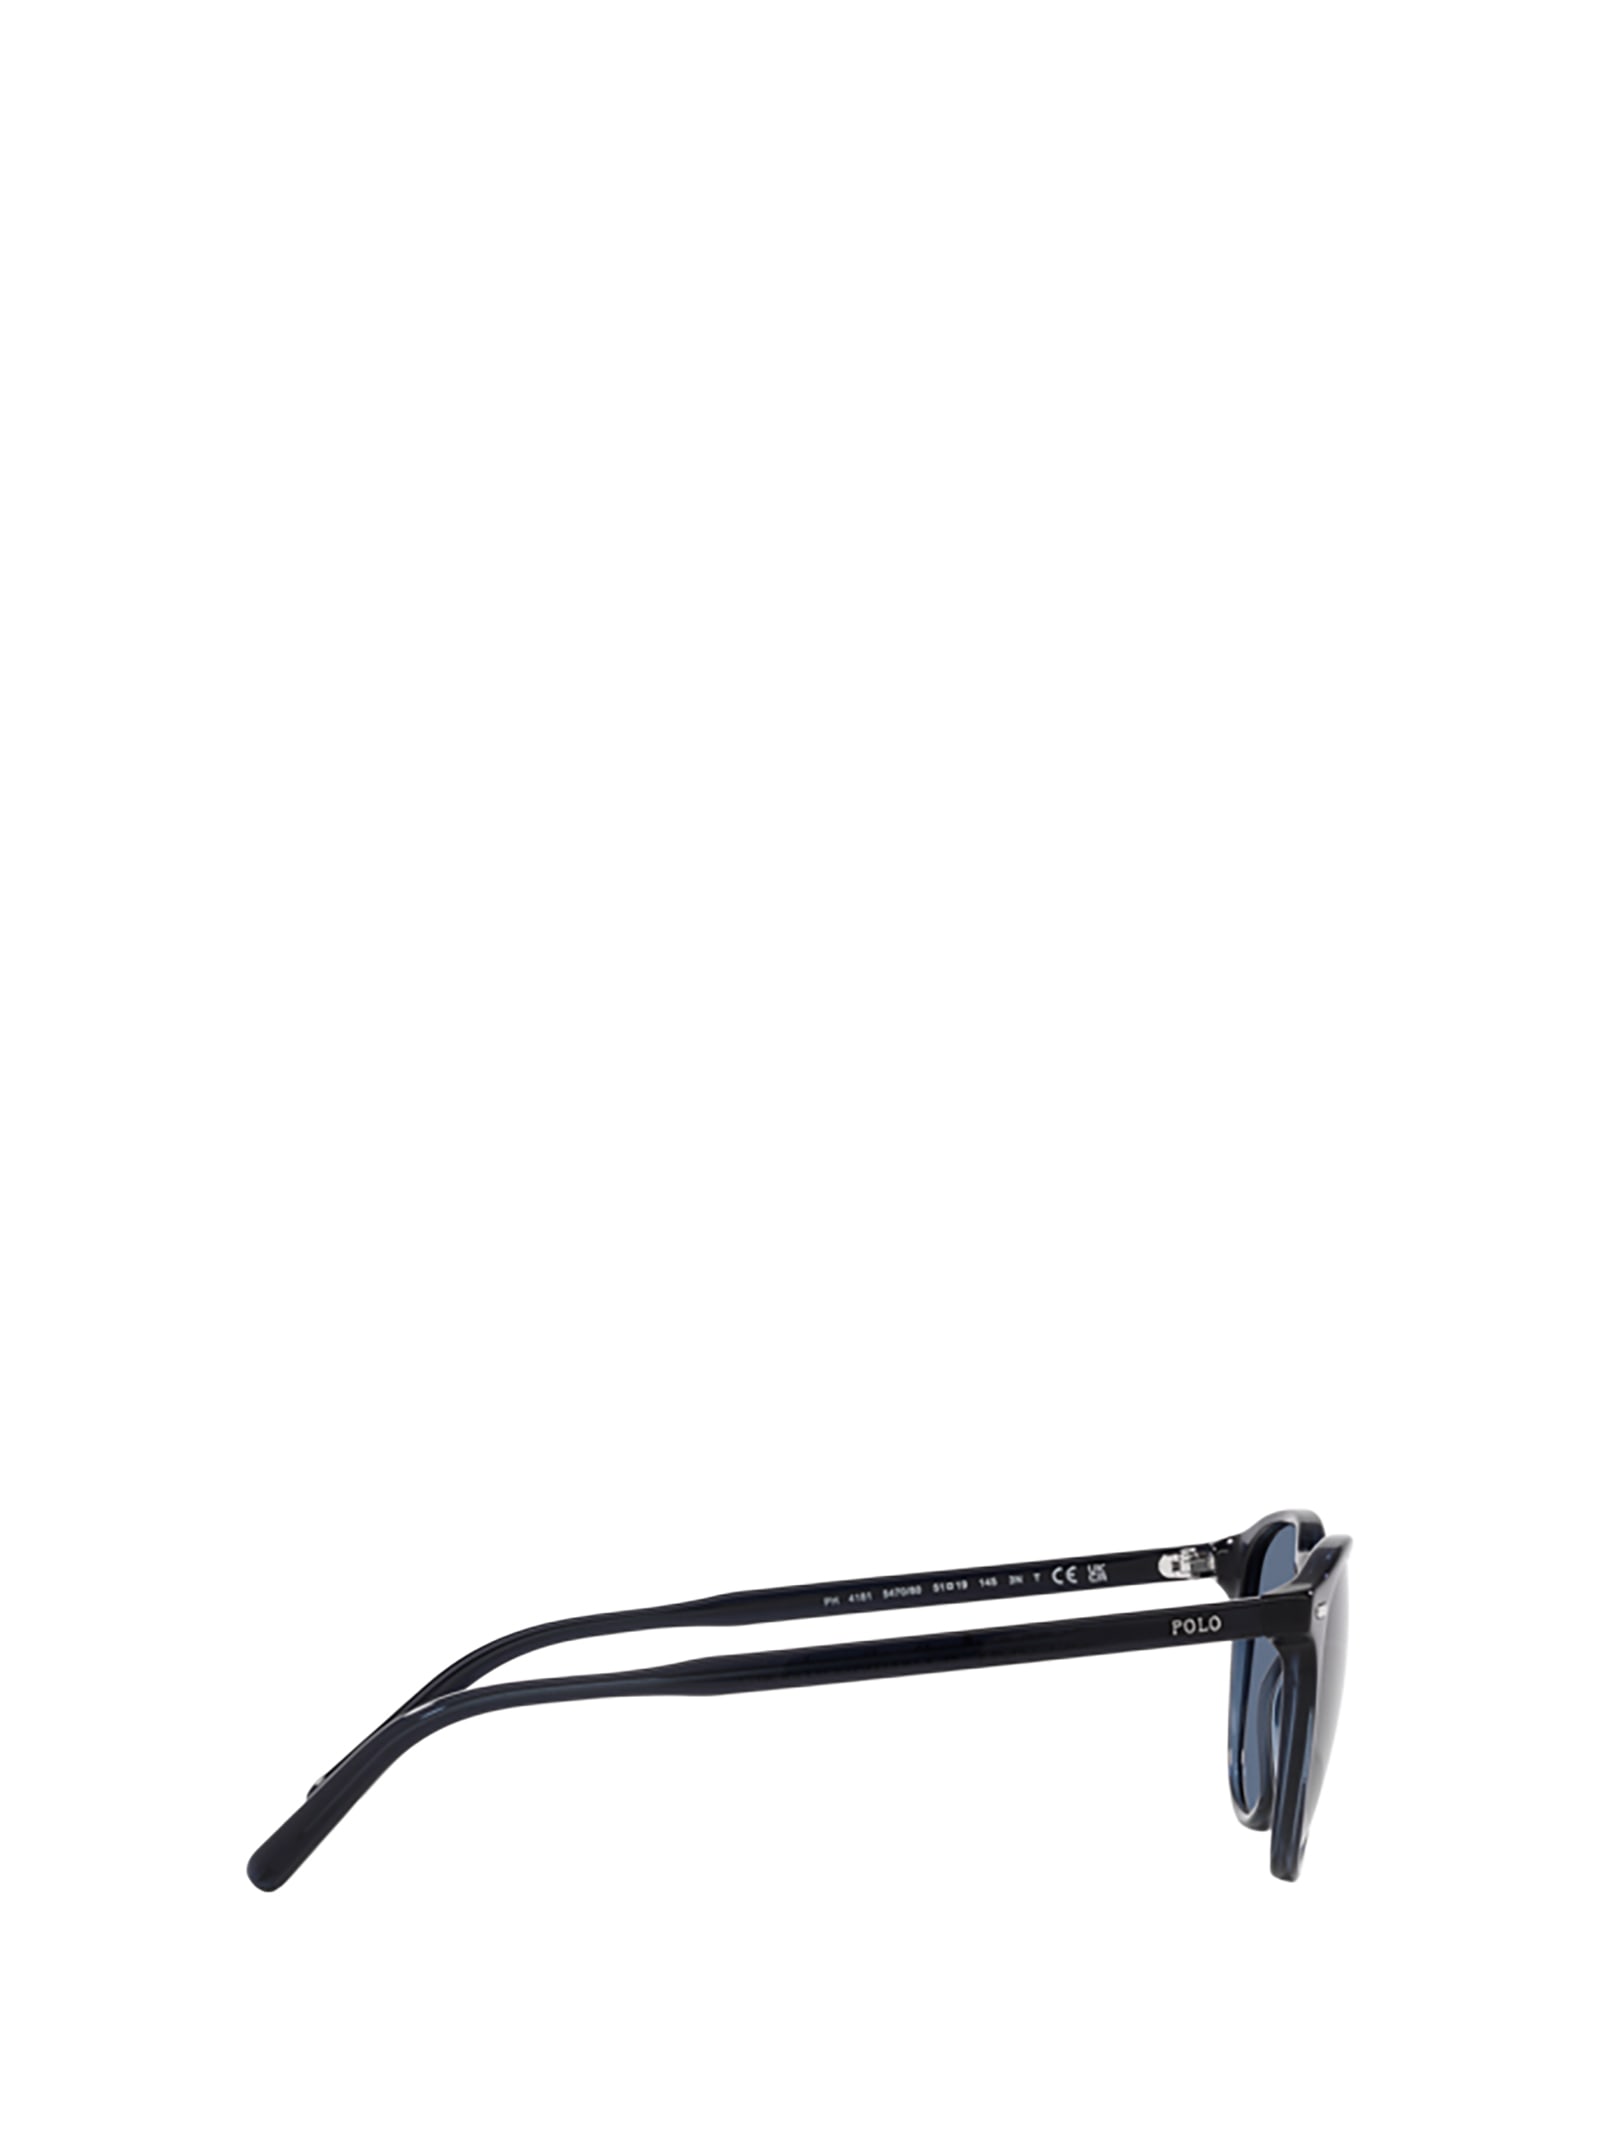 Shop Polo Ralph Lauren Ph4181 Shiny Transparent Navy Blue Sunglasses